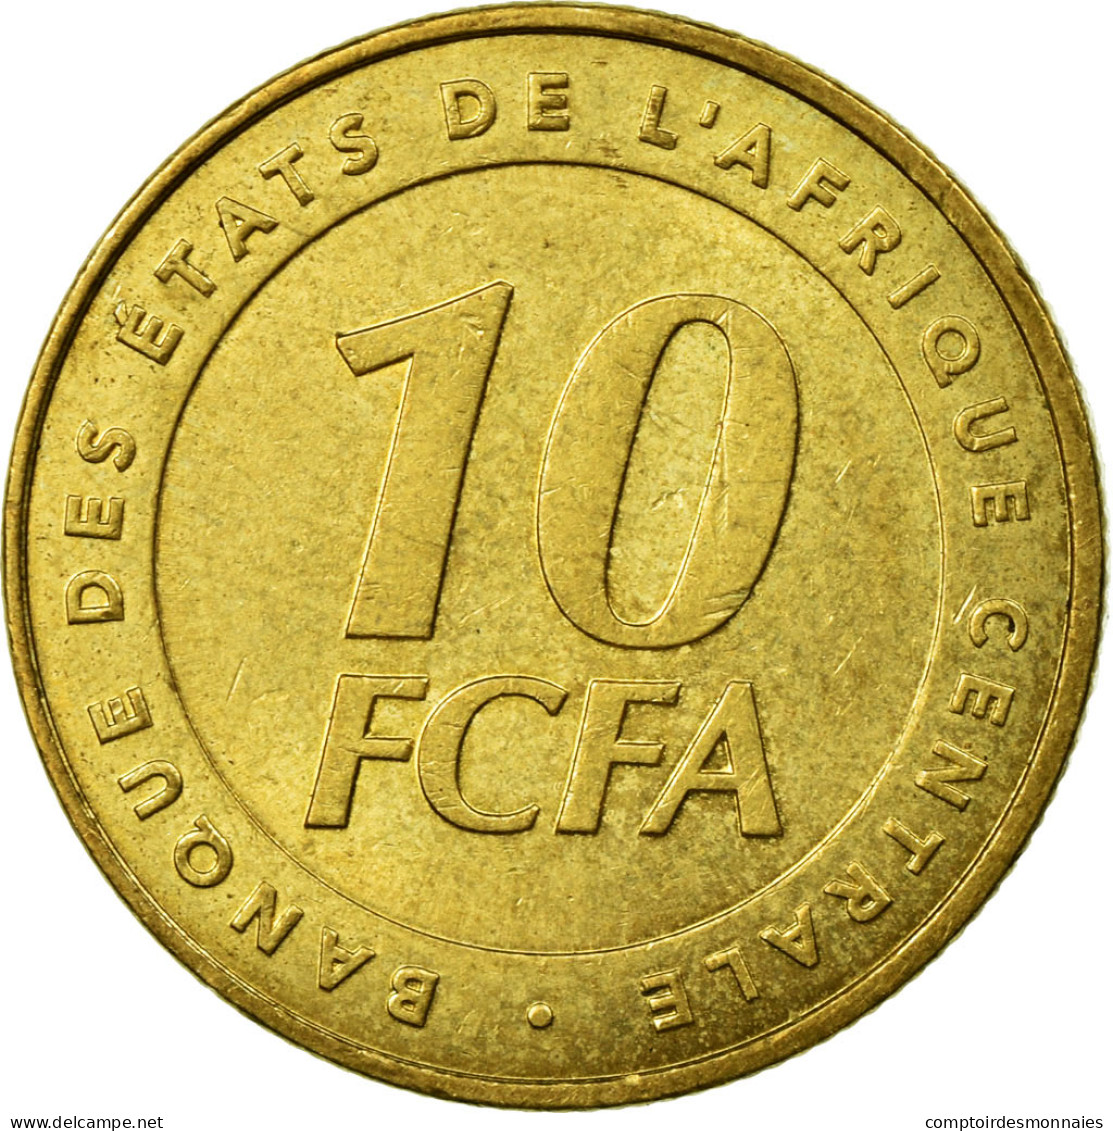 Monnaie, États De L'Afrique Centrale, 10 Francs, 2006, Paris, TTB, Laiton - Kameroen